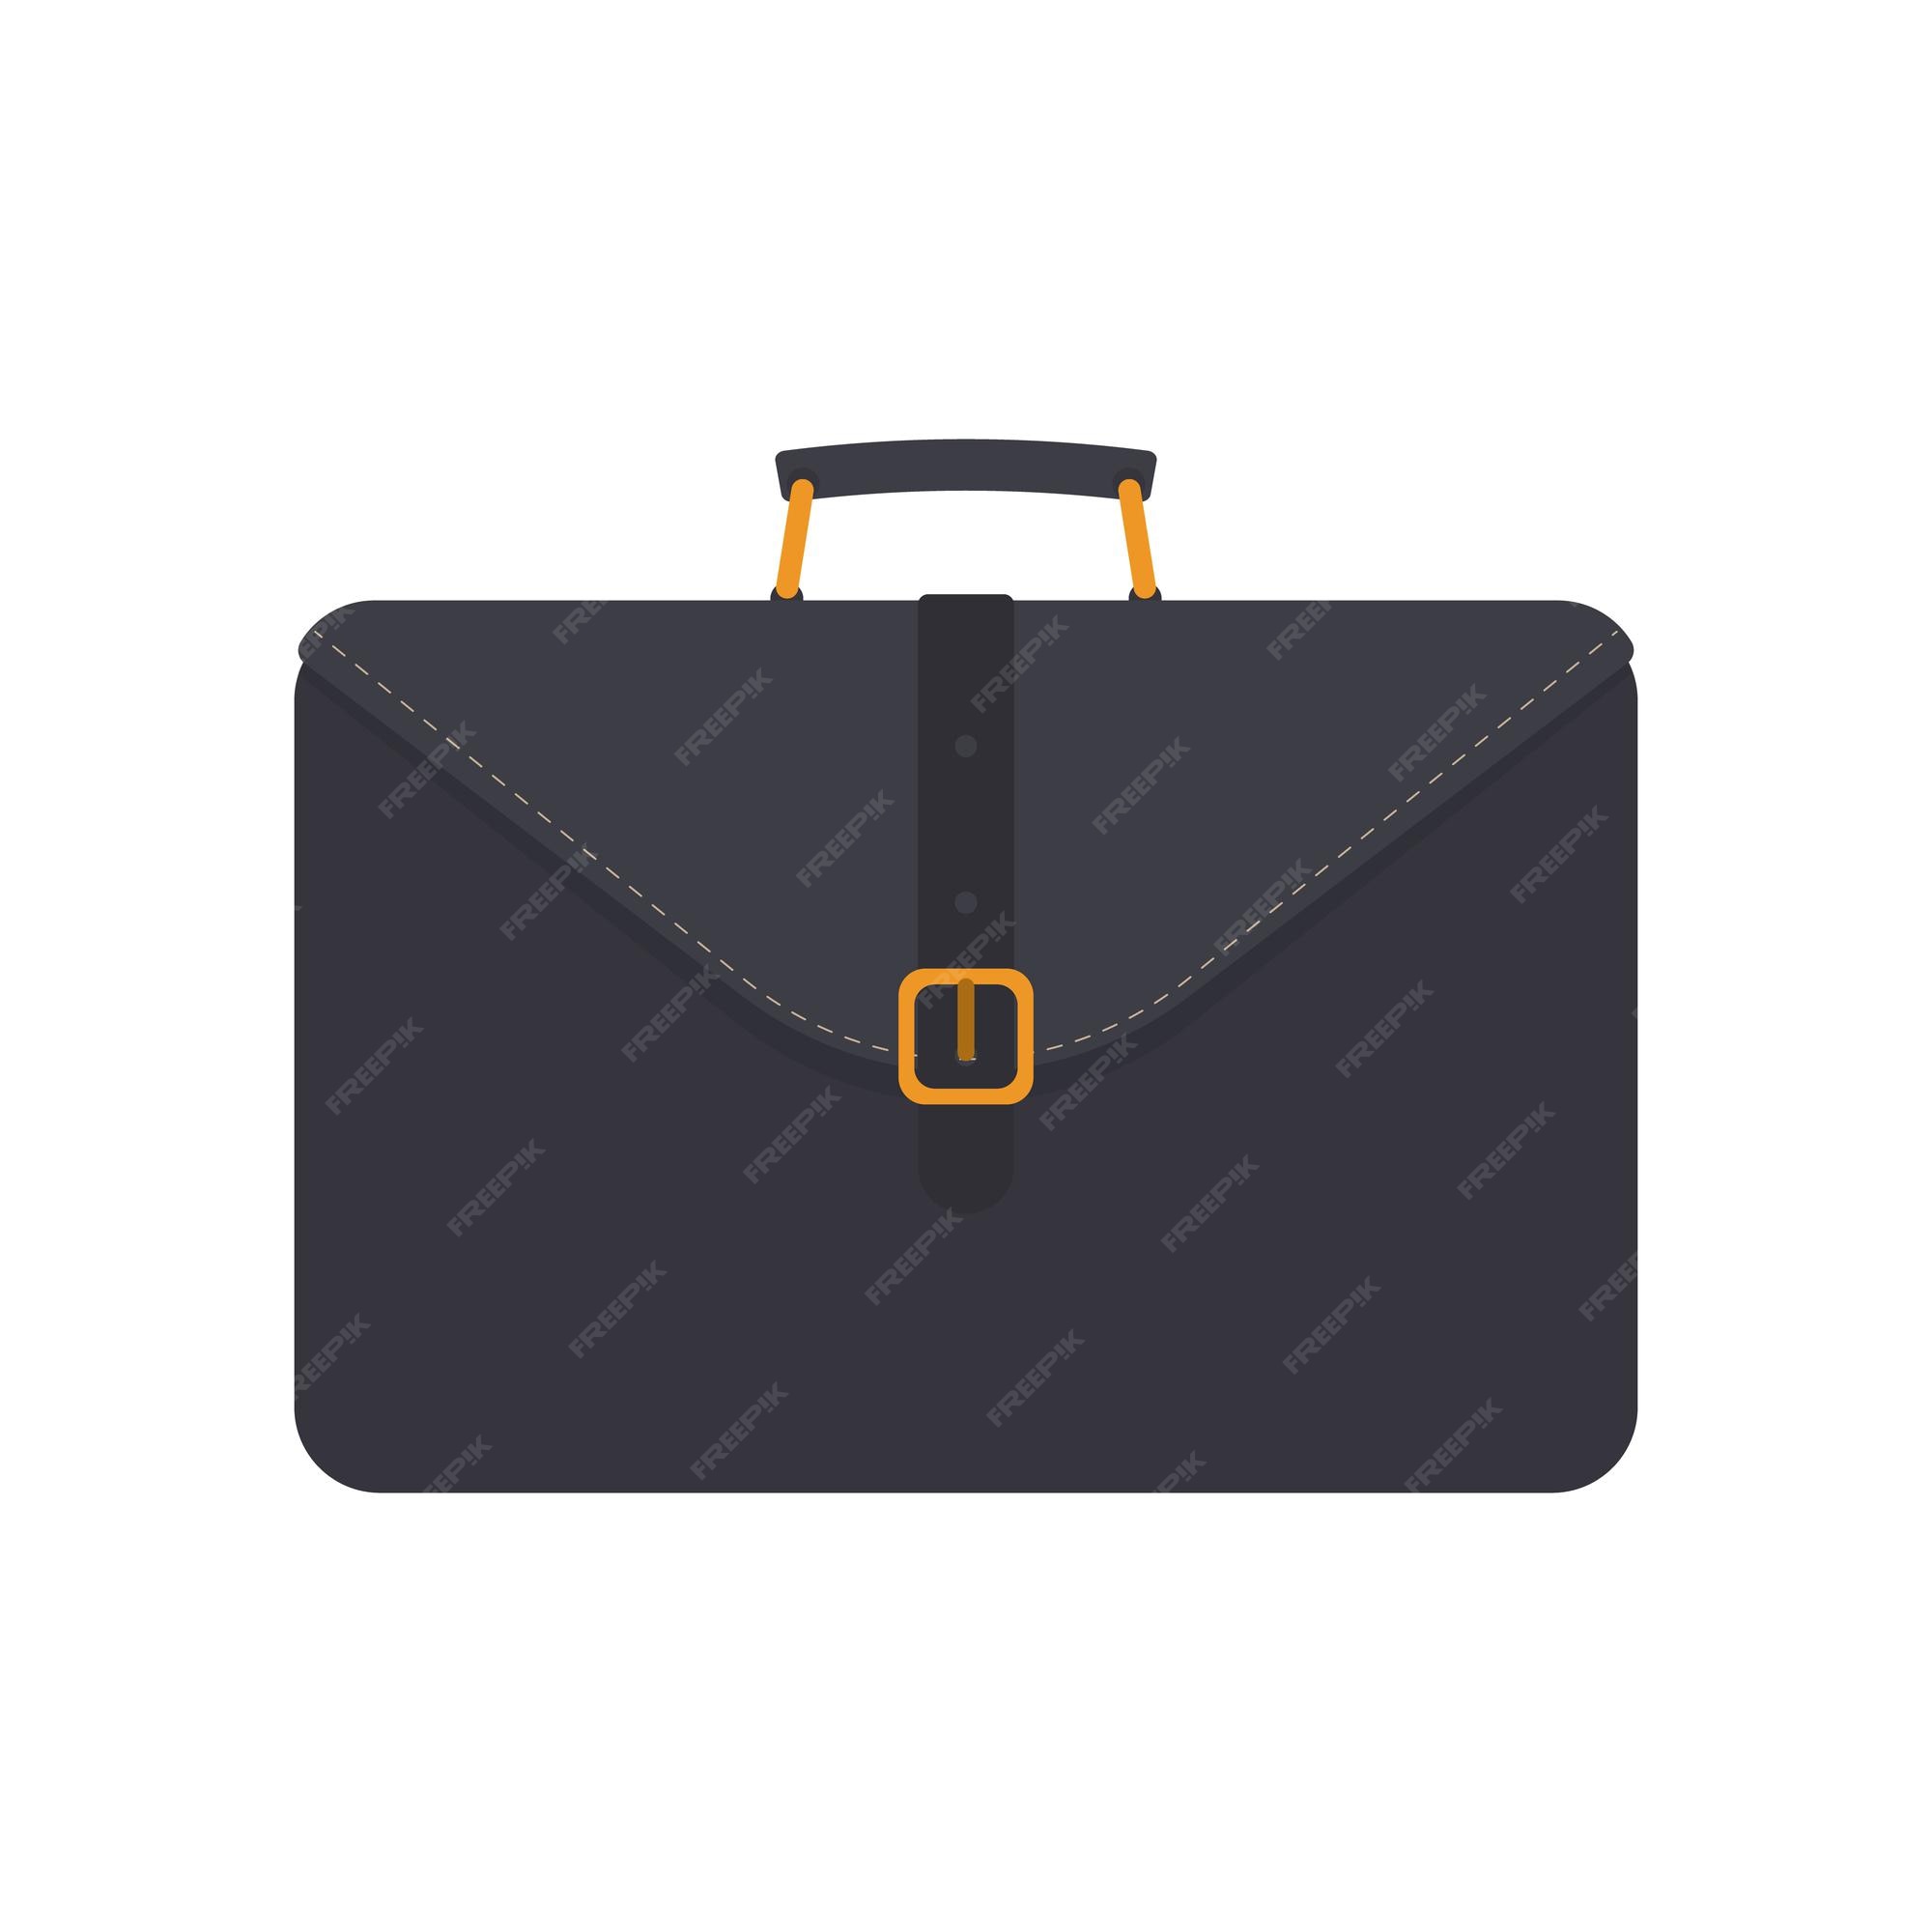 Maleta de negocios negra. maleta para documentos portátil. estilo plano. aislado. vector. Vector Premium